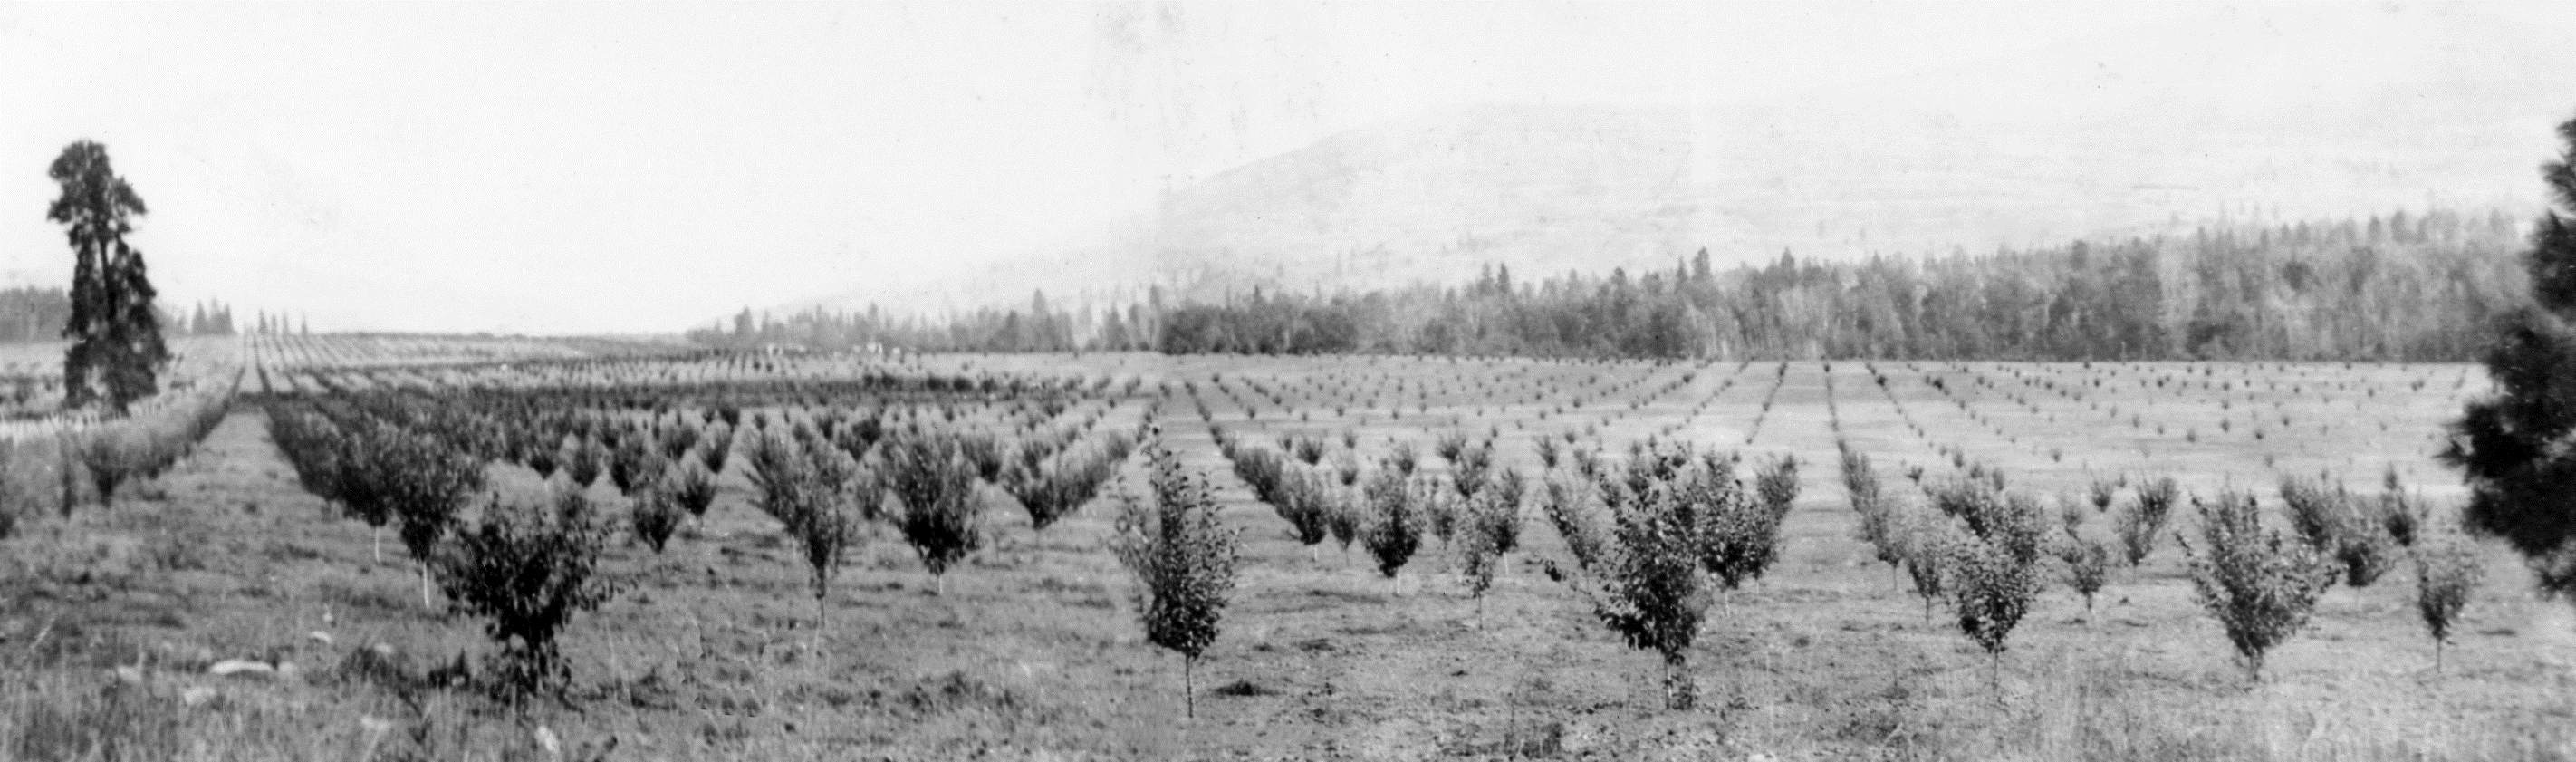 Photo en noir et blanc représentant des rangées de jeunes arbustes dans un grand champ plat avec une forêt et une colline en arrière-plan.